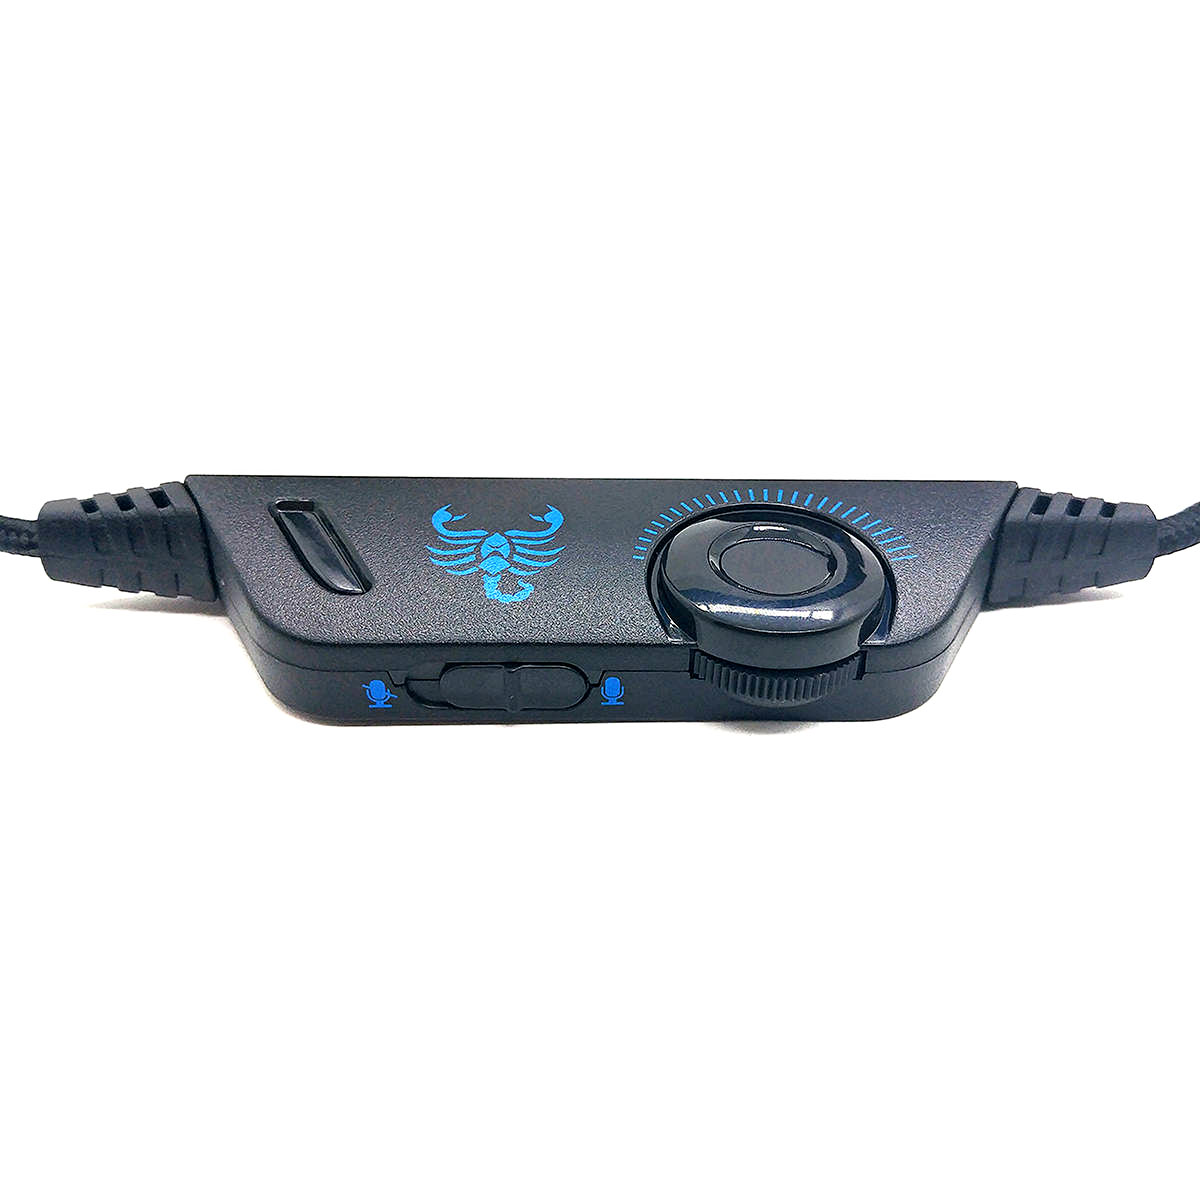 Headphone Gamer para PS4 PC Celular com Microfone Articulado LED RGB 7 Cores Almofada Extra Macia GH-X1000 Fone Azul